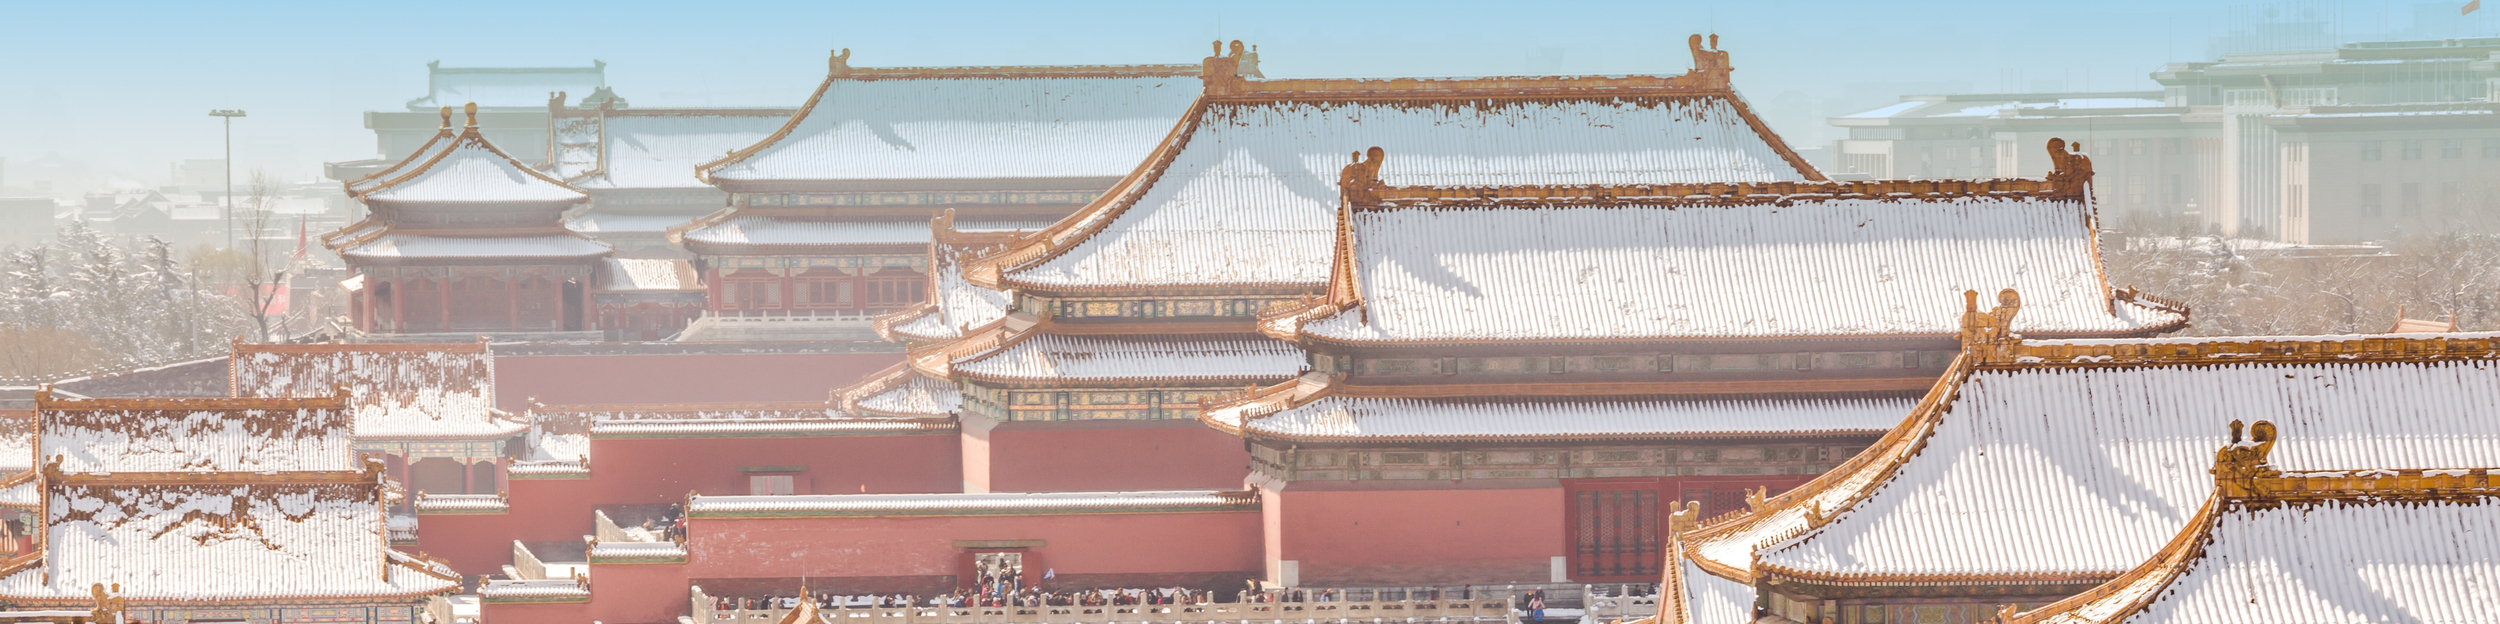 2015.02.02-Winter-Forbidden-City.jpg